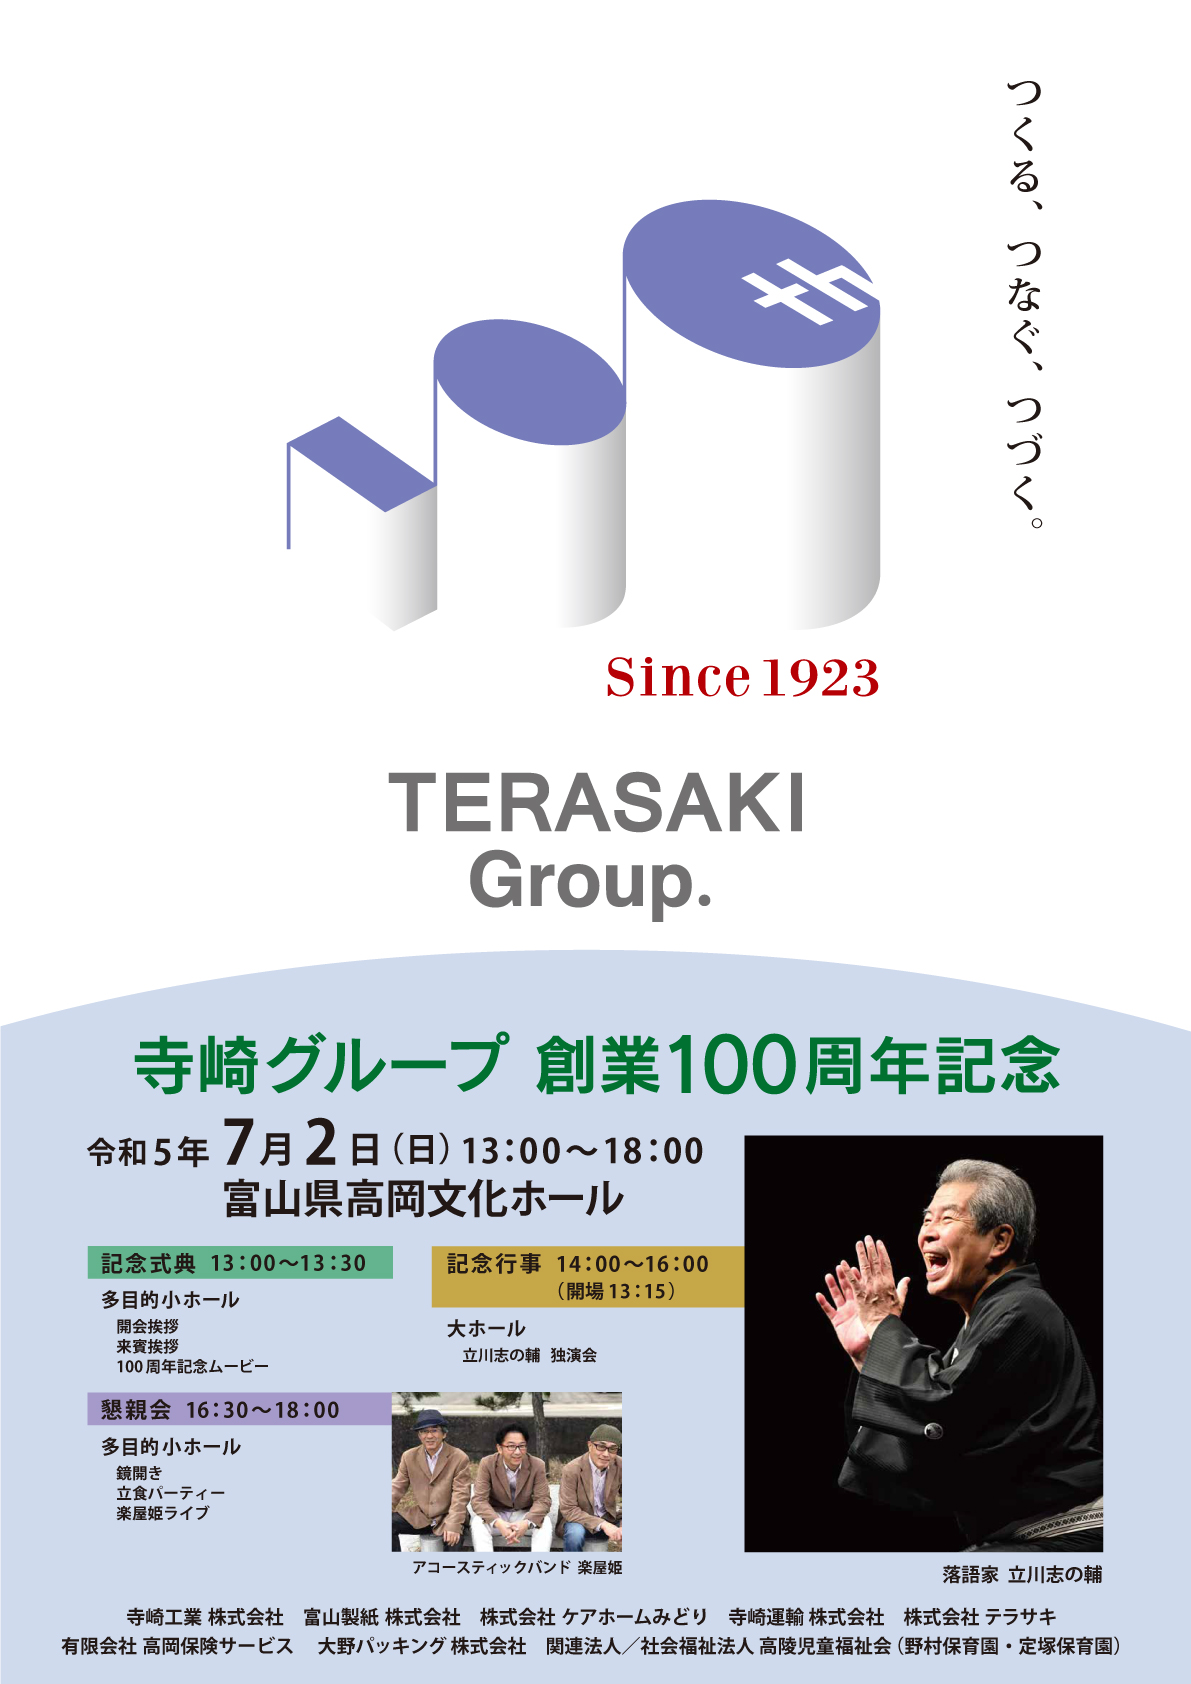 寺崎グループ創業100周年記念イベントポスター